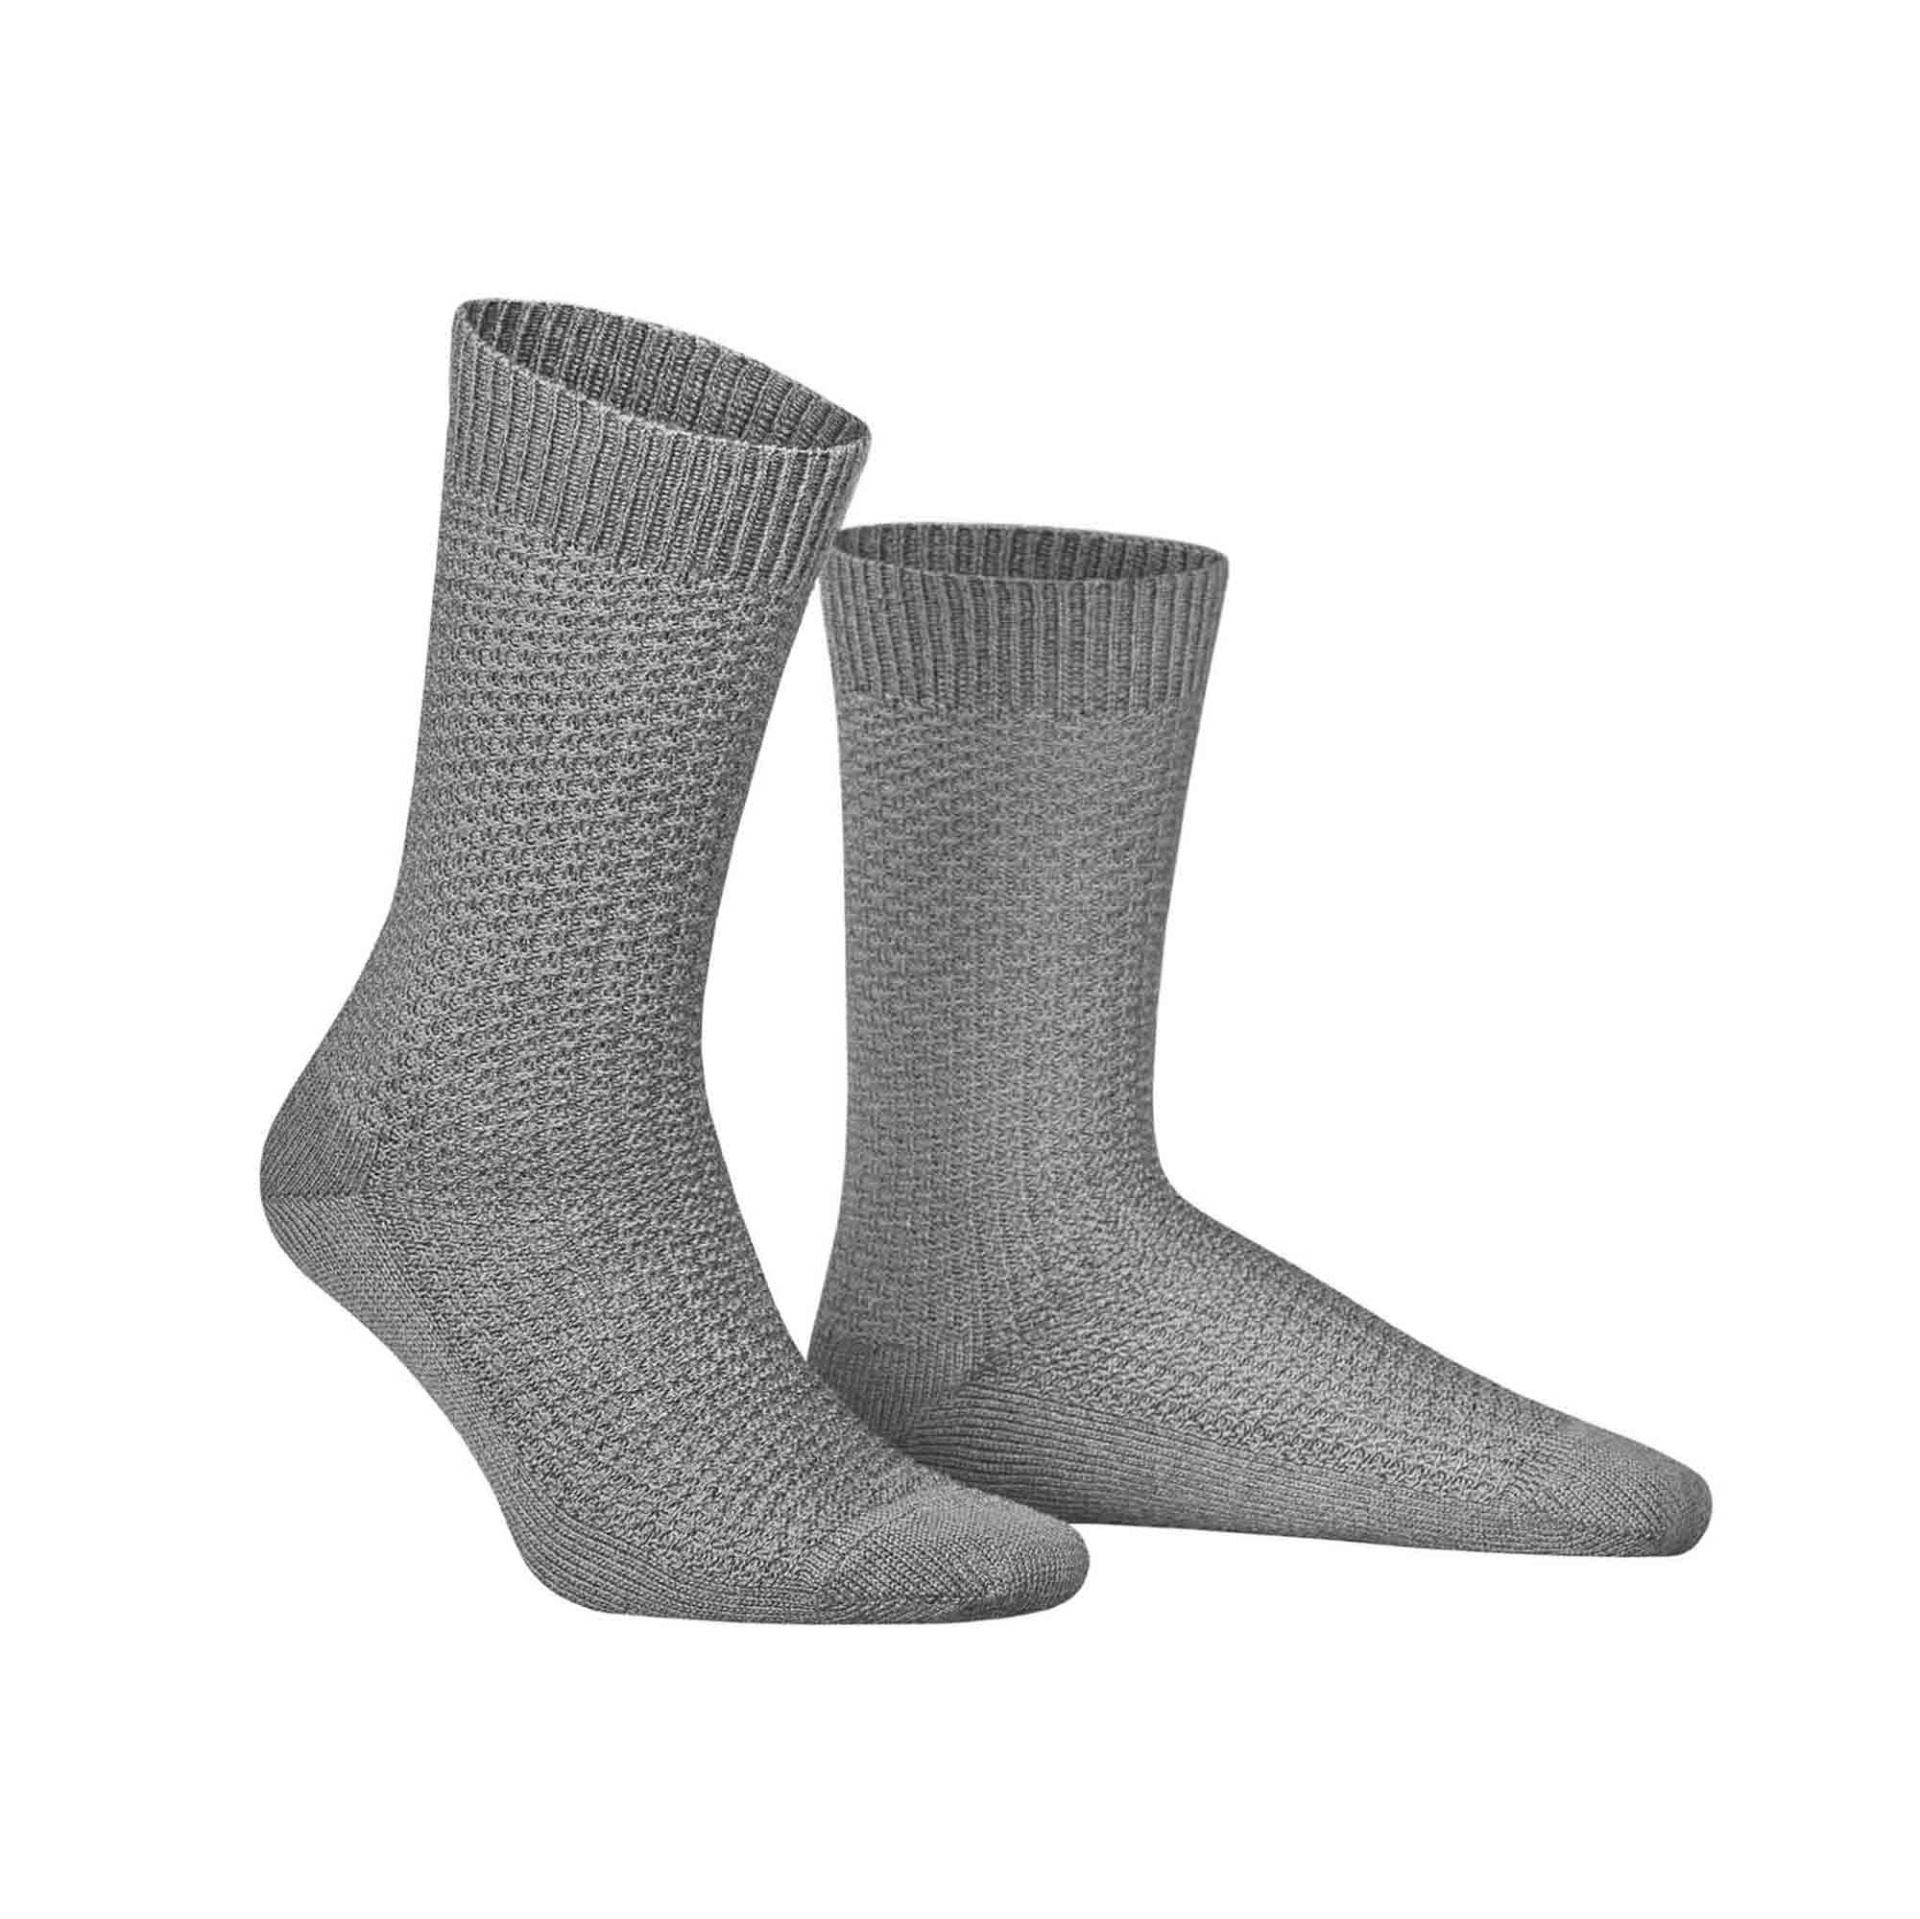 HUDSON Herren PIQUE -  43/46 - Socken mit moderner Pique-Struktur - Silber (Grau)